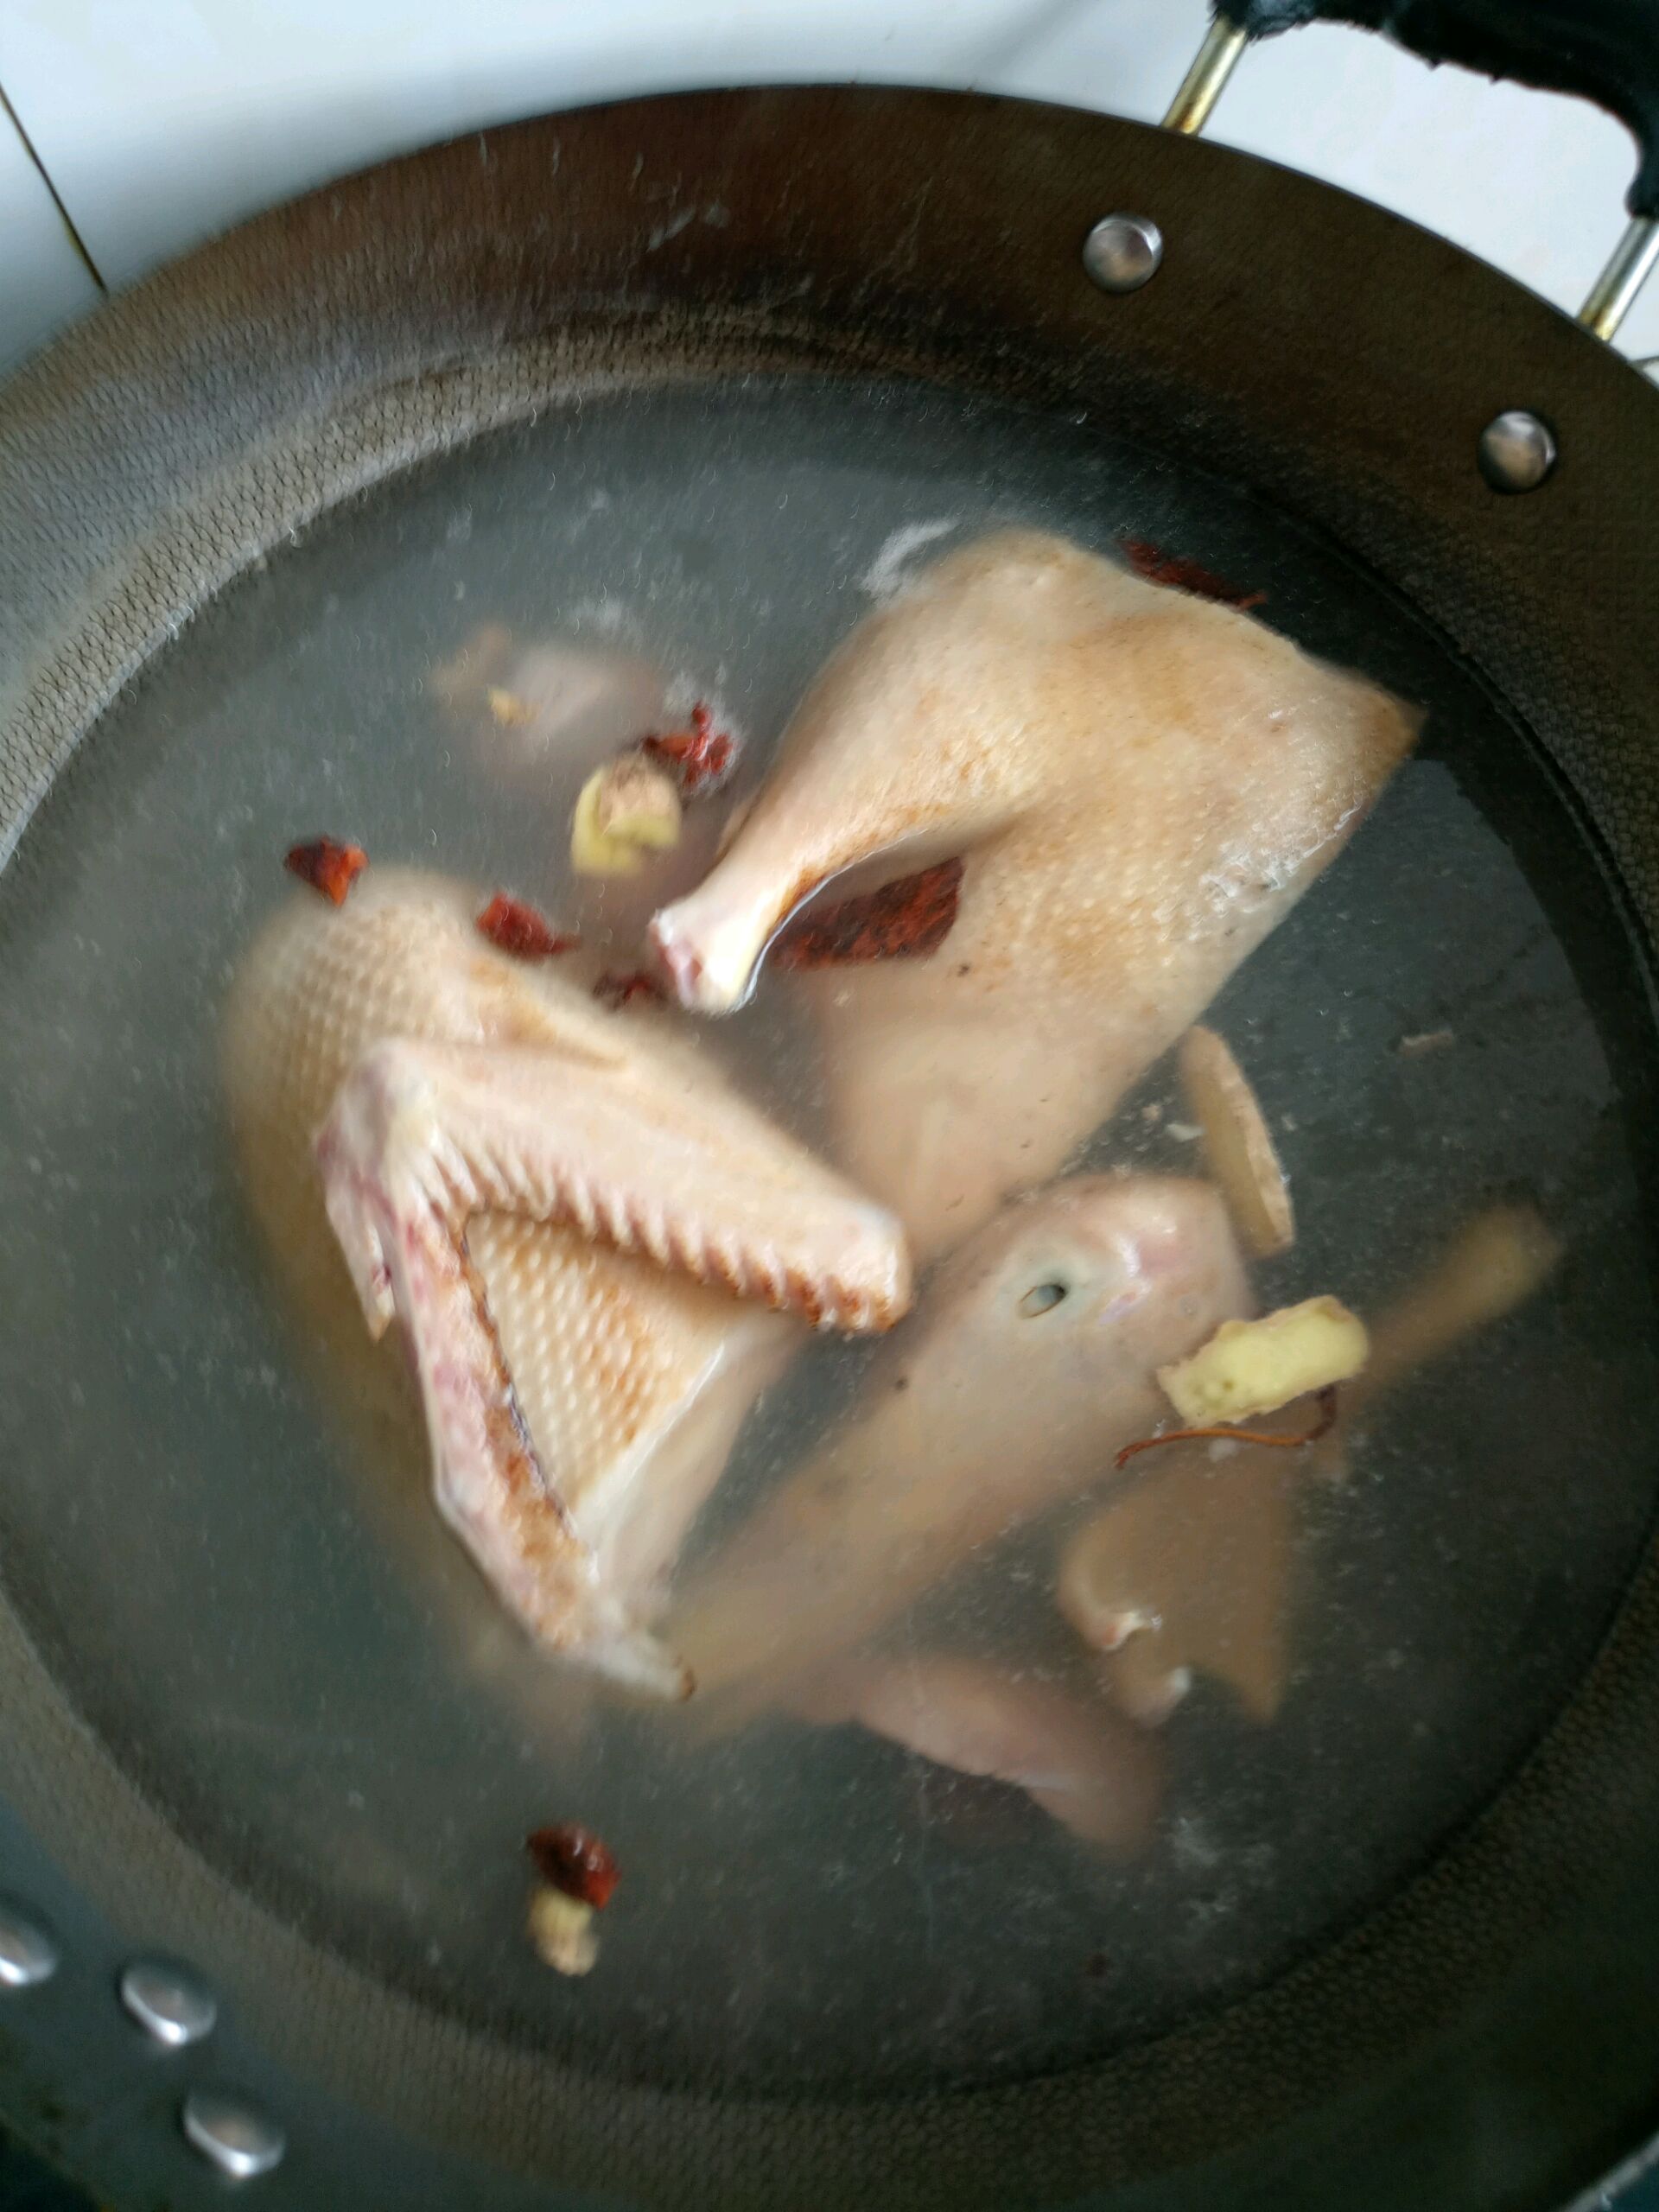 四大菜系鲁菜之一：鲁菜锅烧鸭的做法！